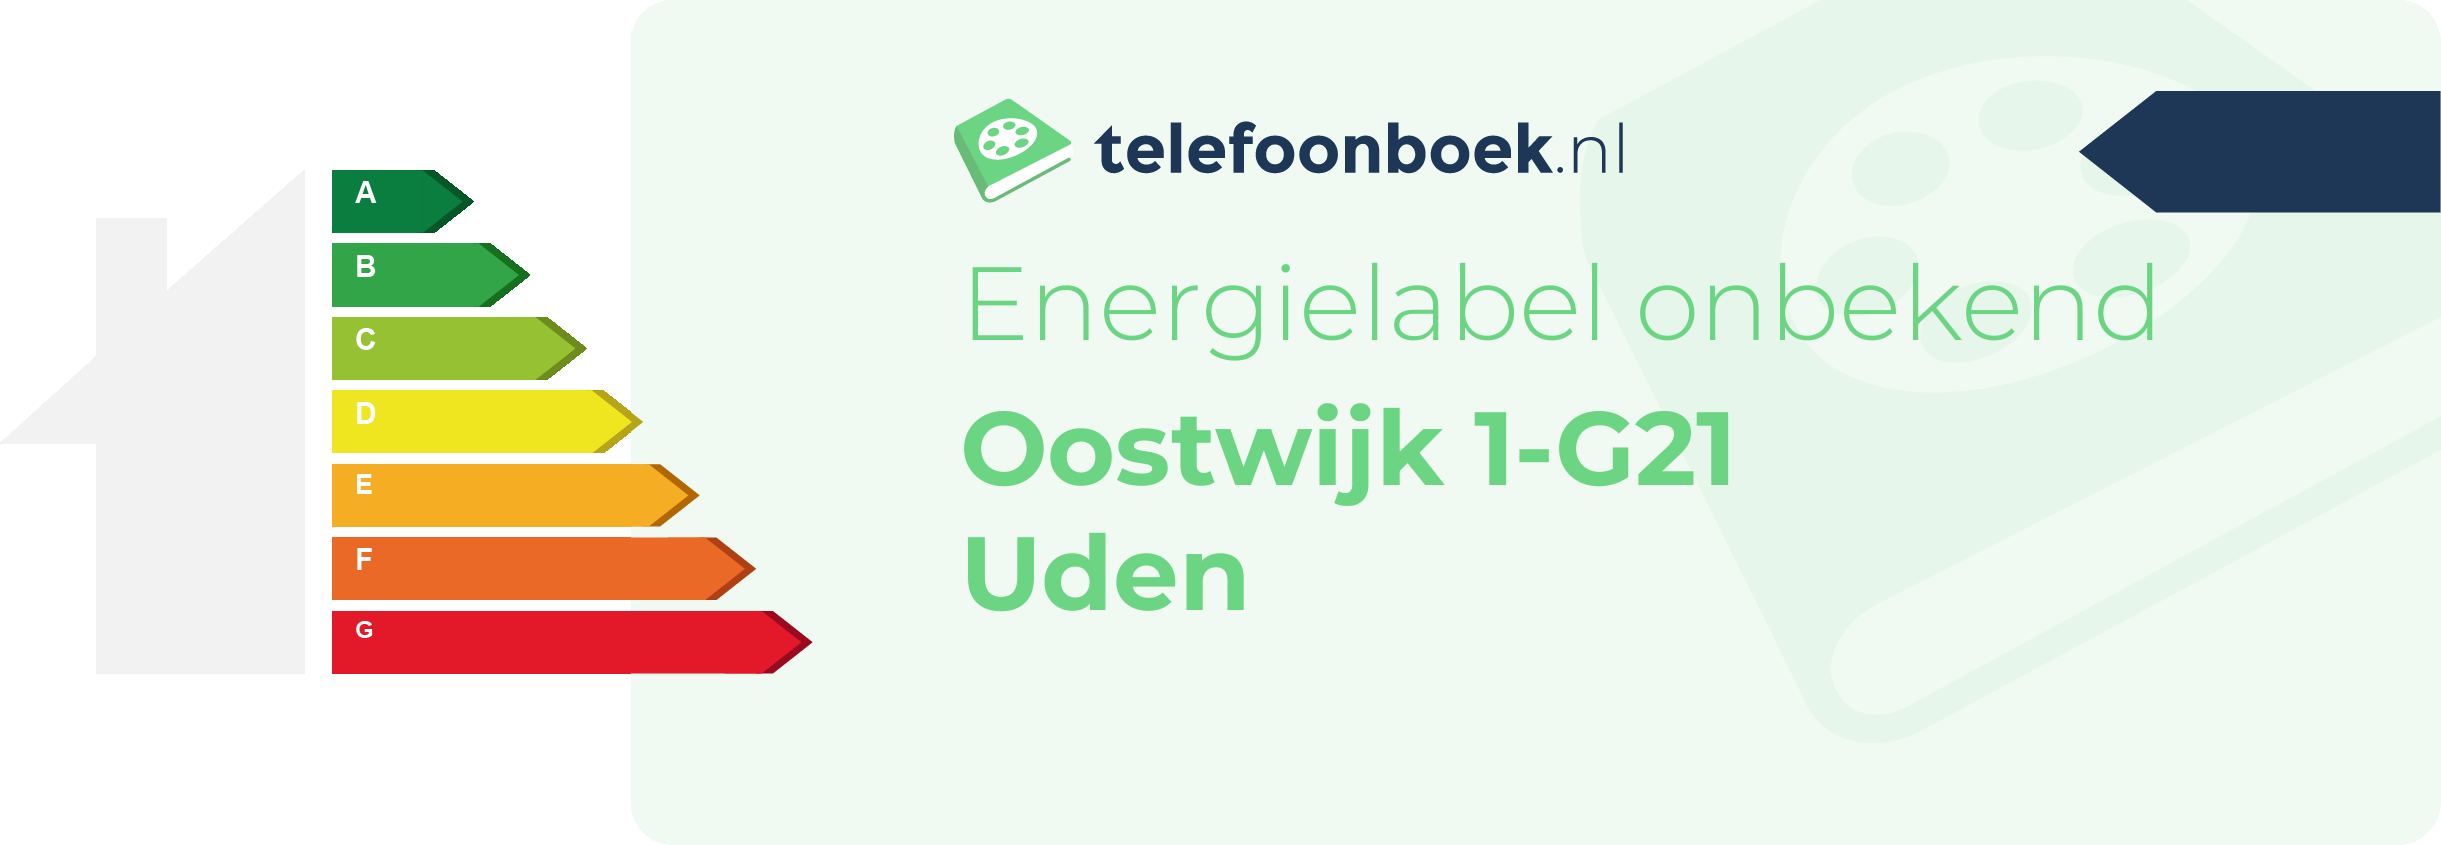 Energielabel Oostwijk 1-G21 Uden